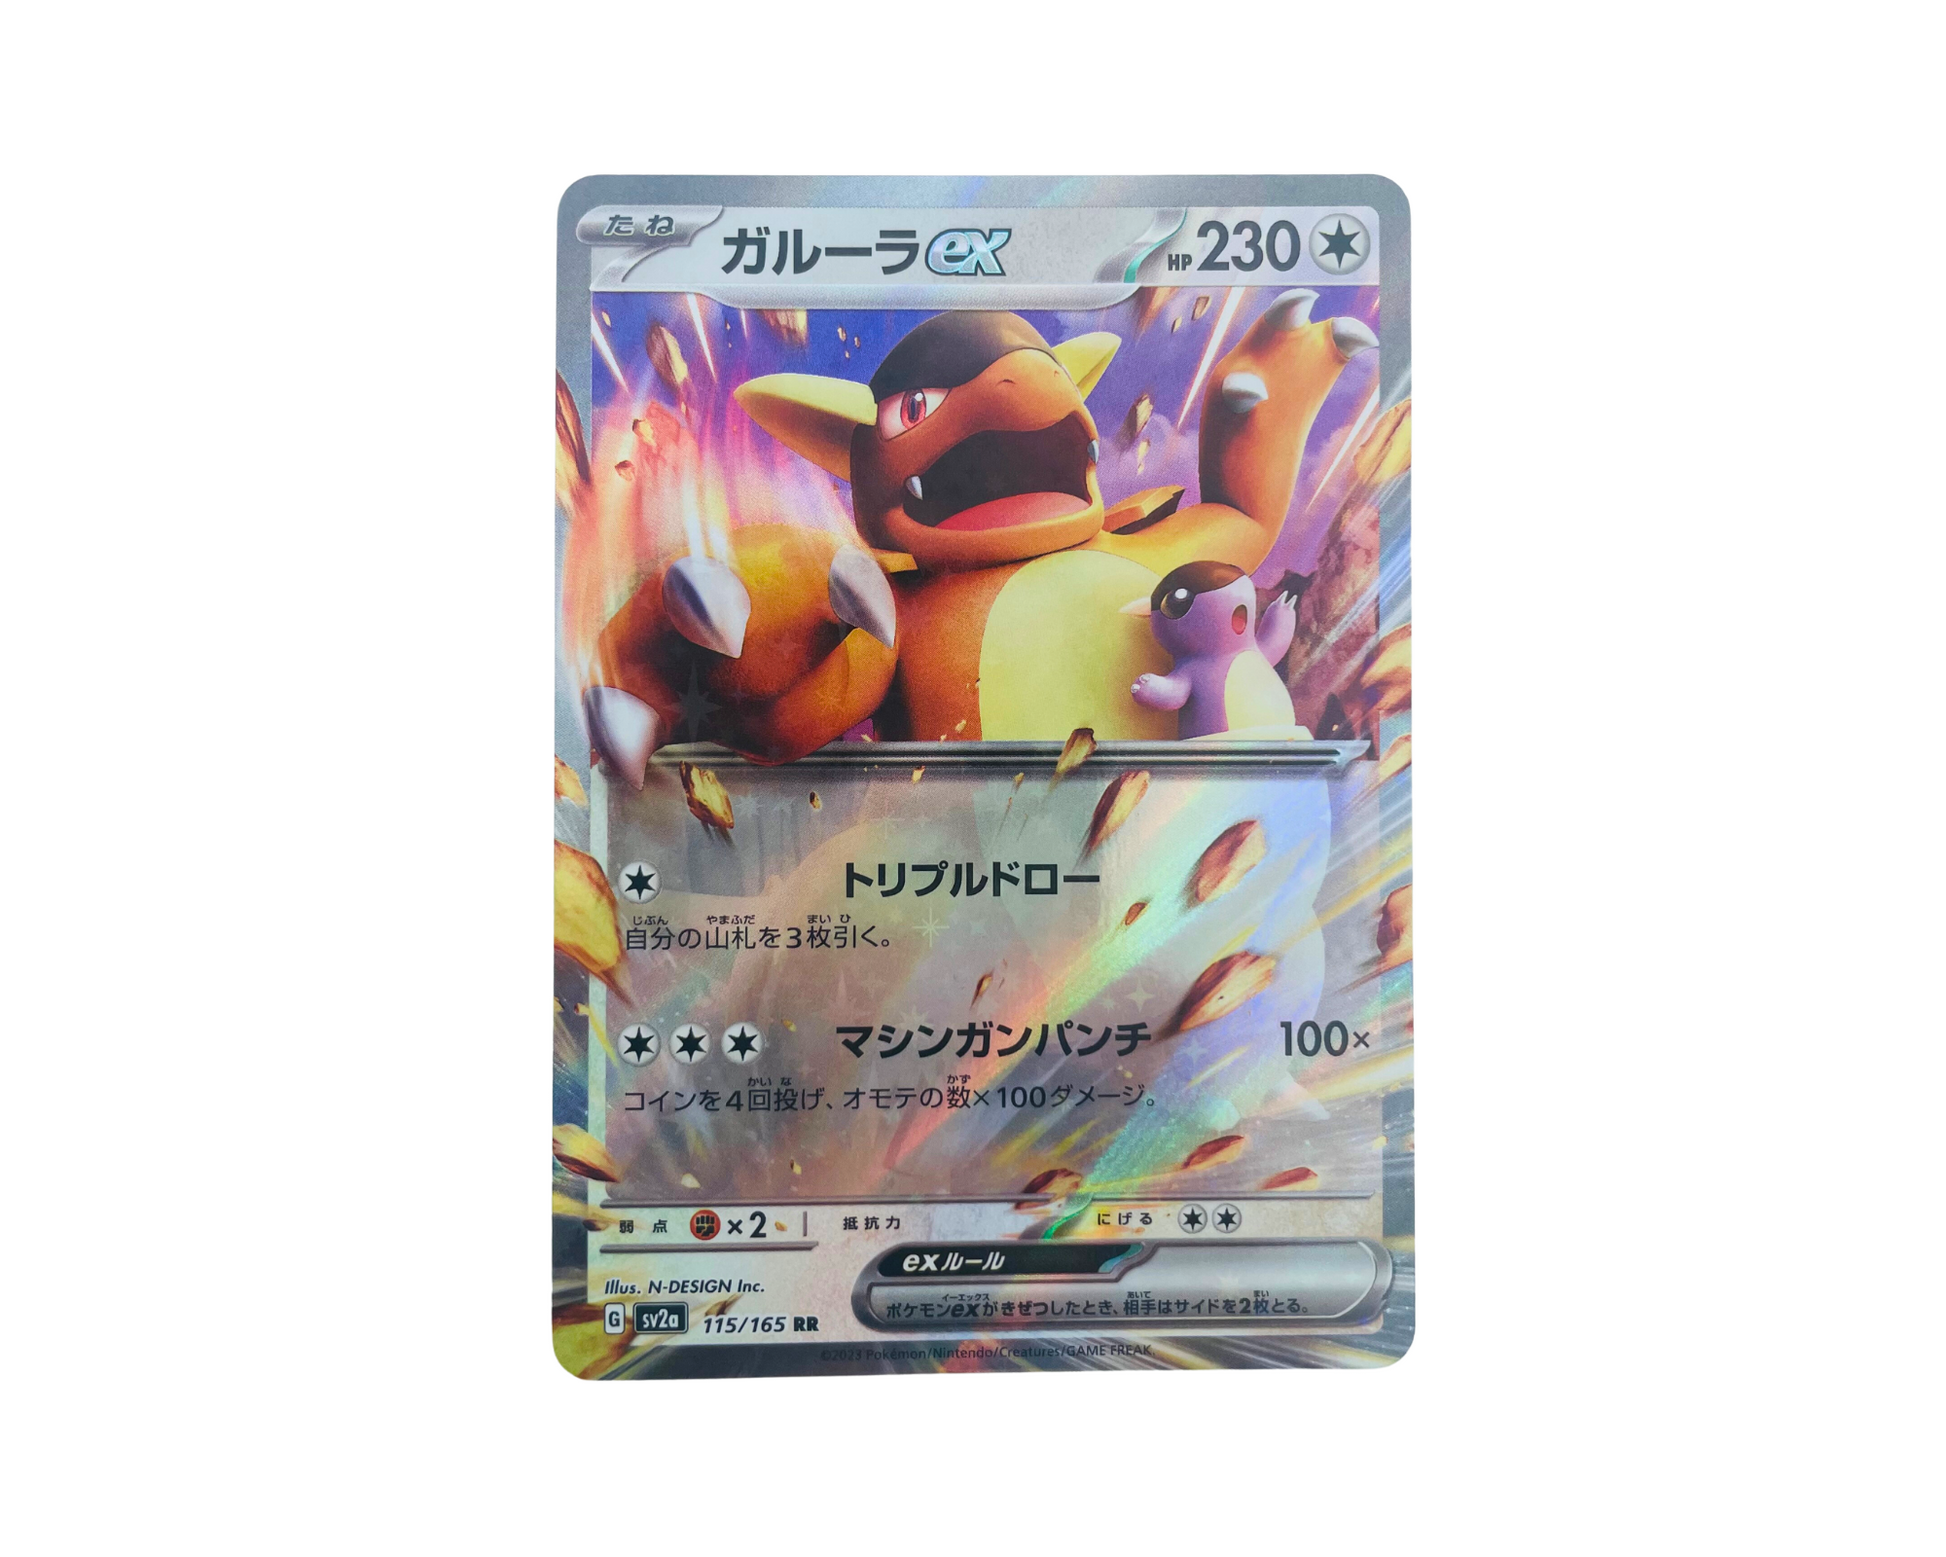 Pokémon TCG Kangaskhan EX 115/165 RR Graded / Ohodnotená 9